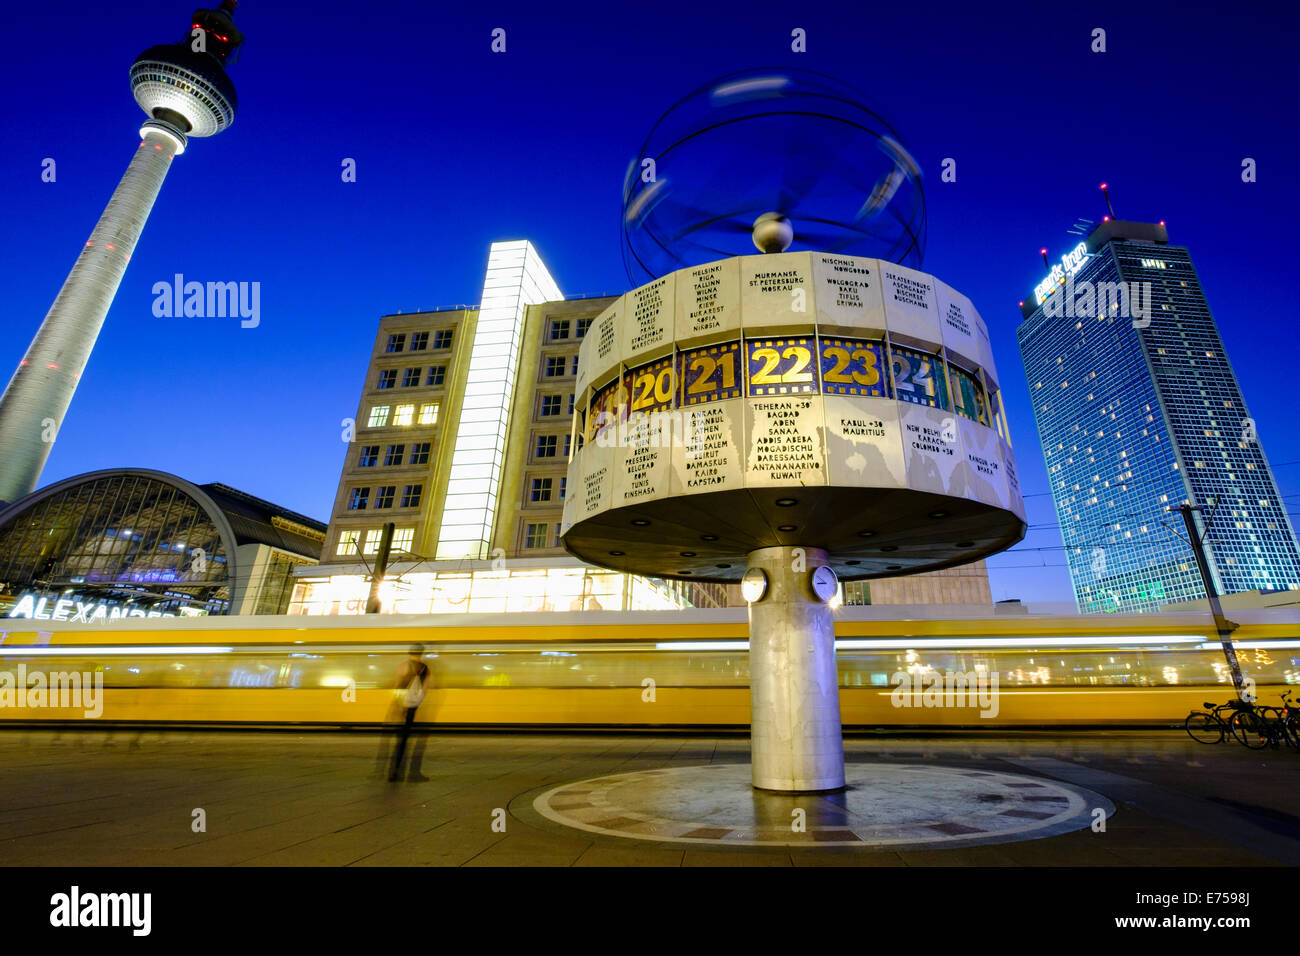 Vue de la nuit de l'Horloge universelle et tramway à Alexanderplatz Mitte Berlin Allemagne Banque D'Images